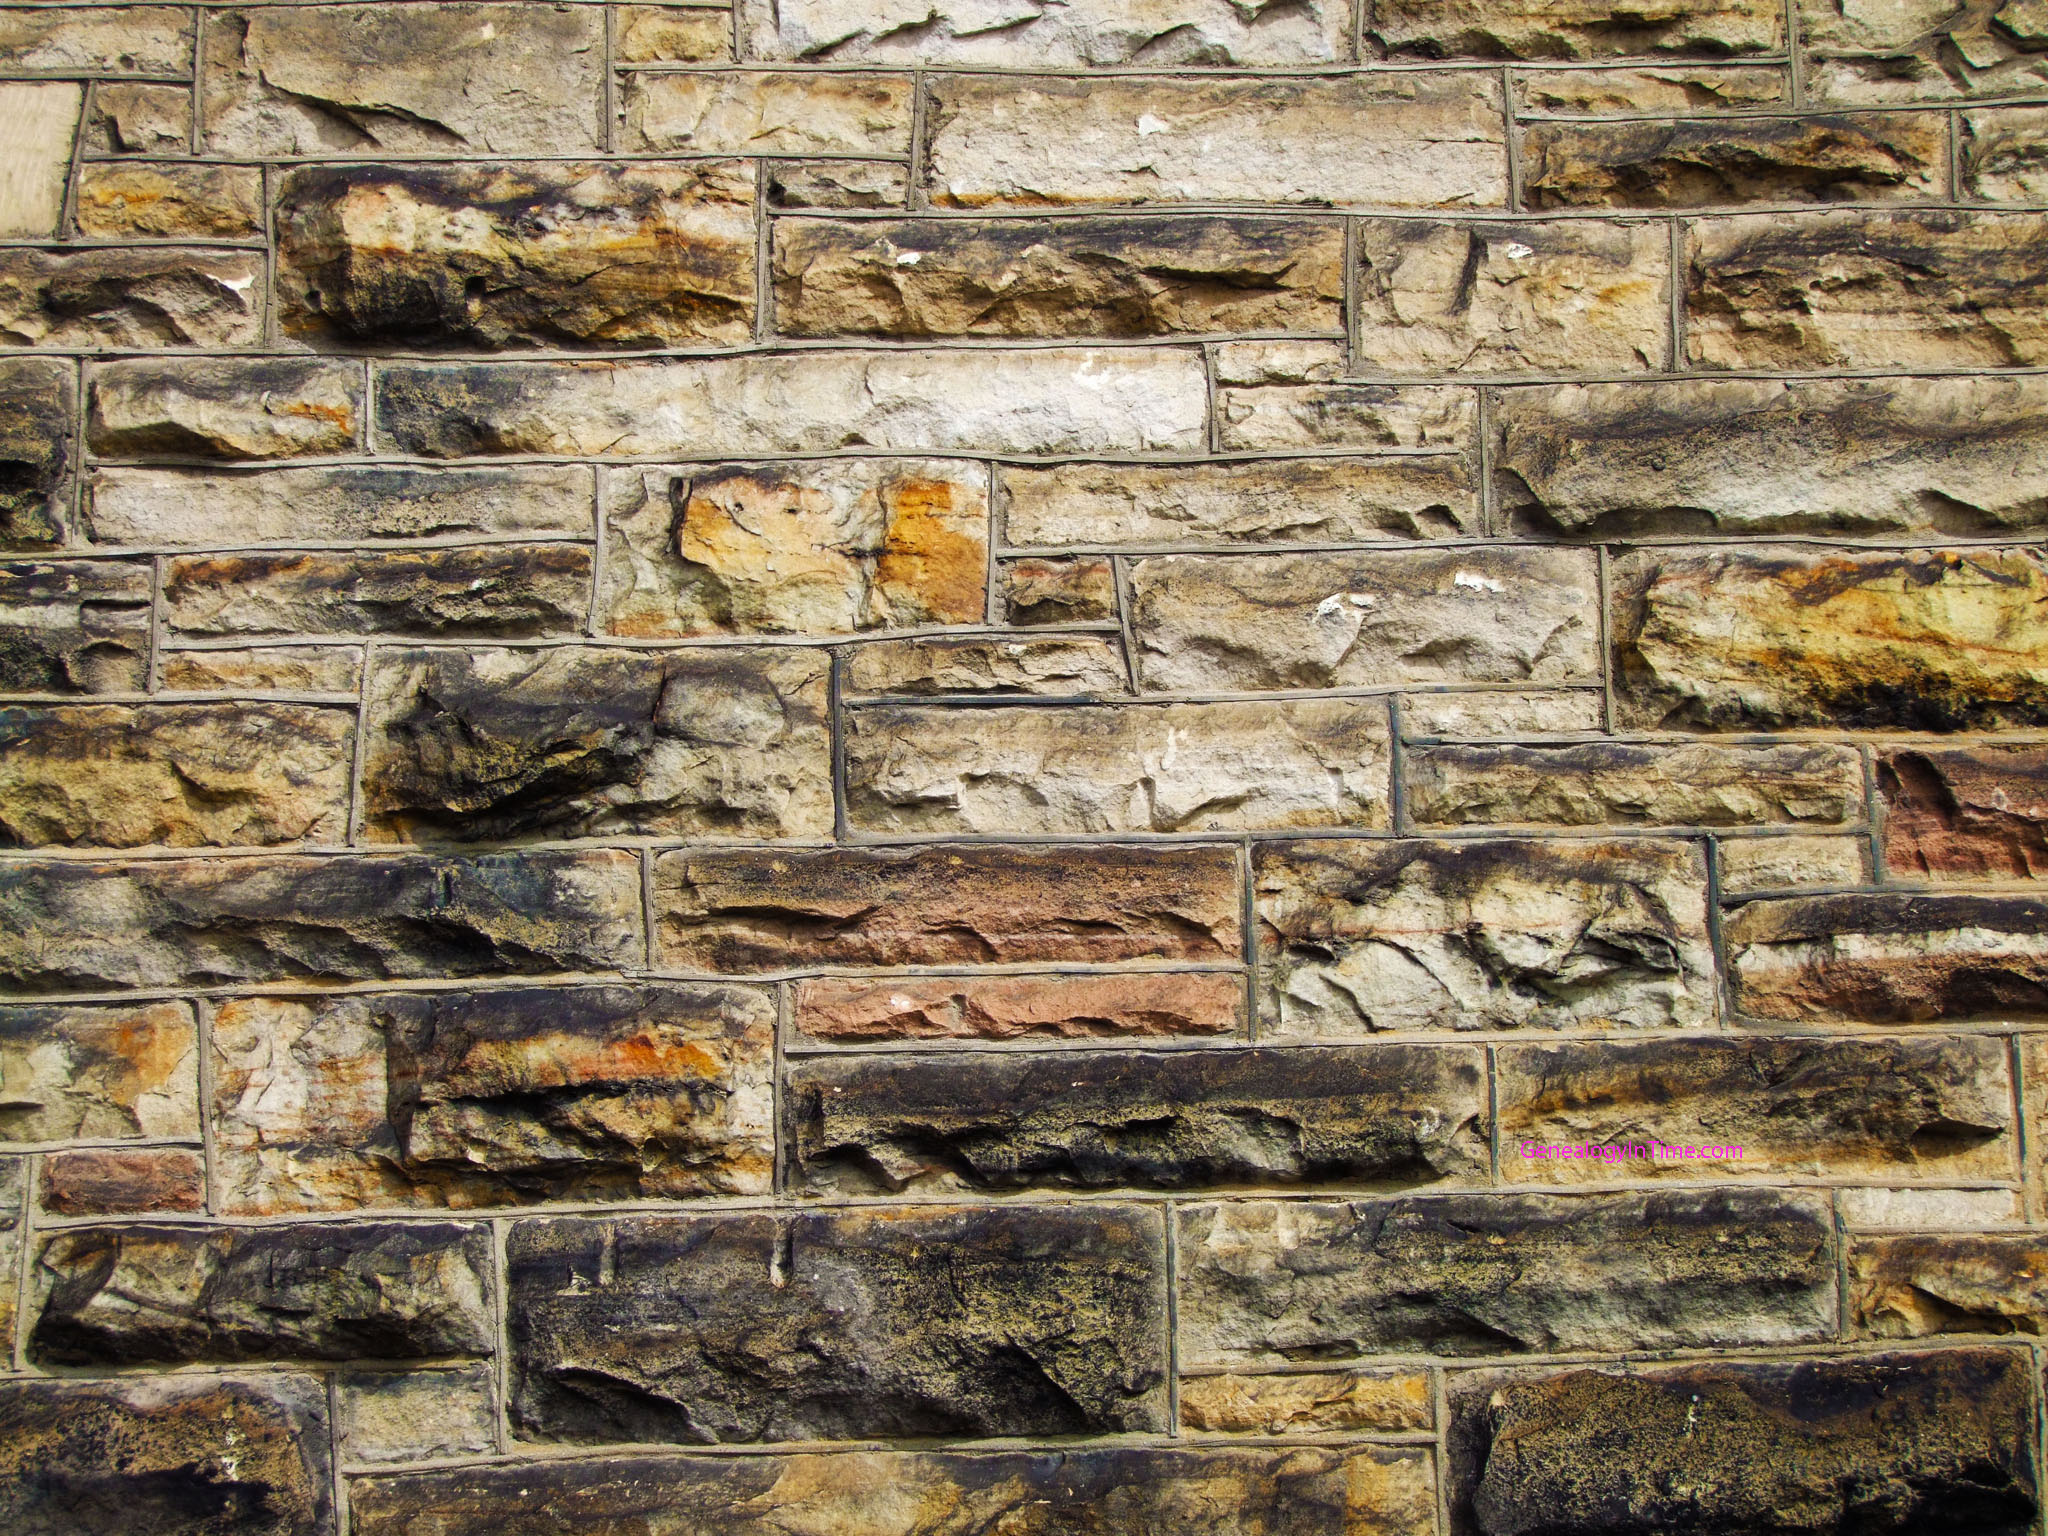 Brick Wall Image Series